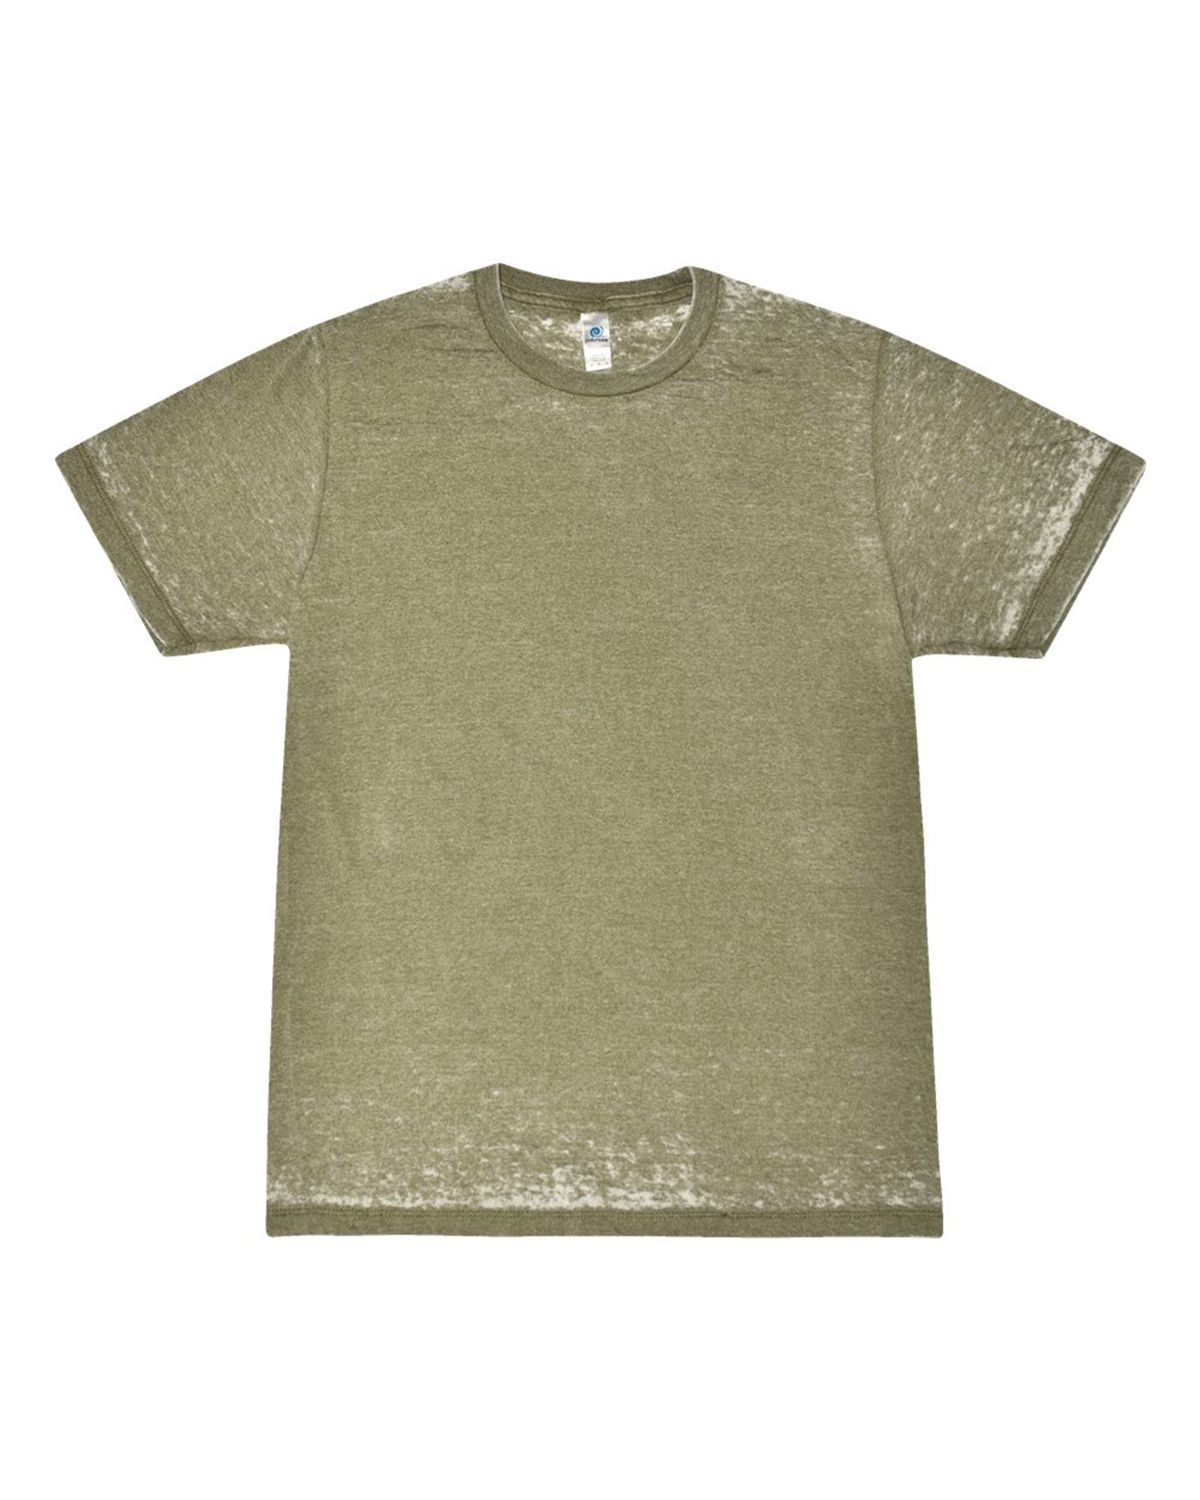 Colortone 1350 - Acid Wash Burnout T-Shirt